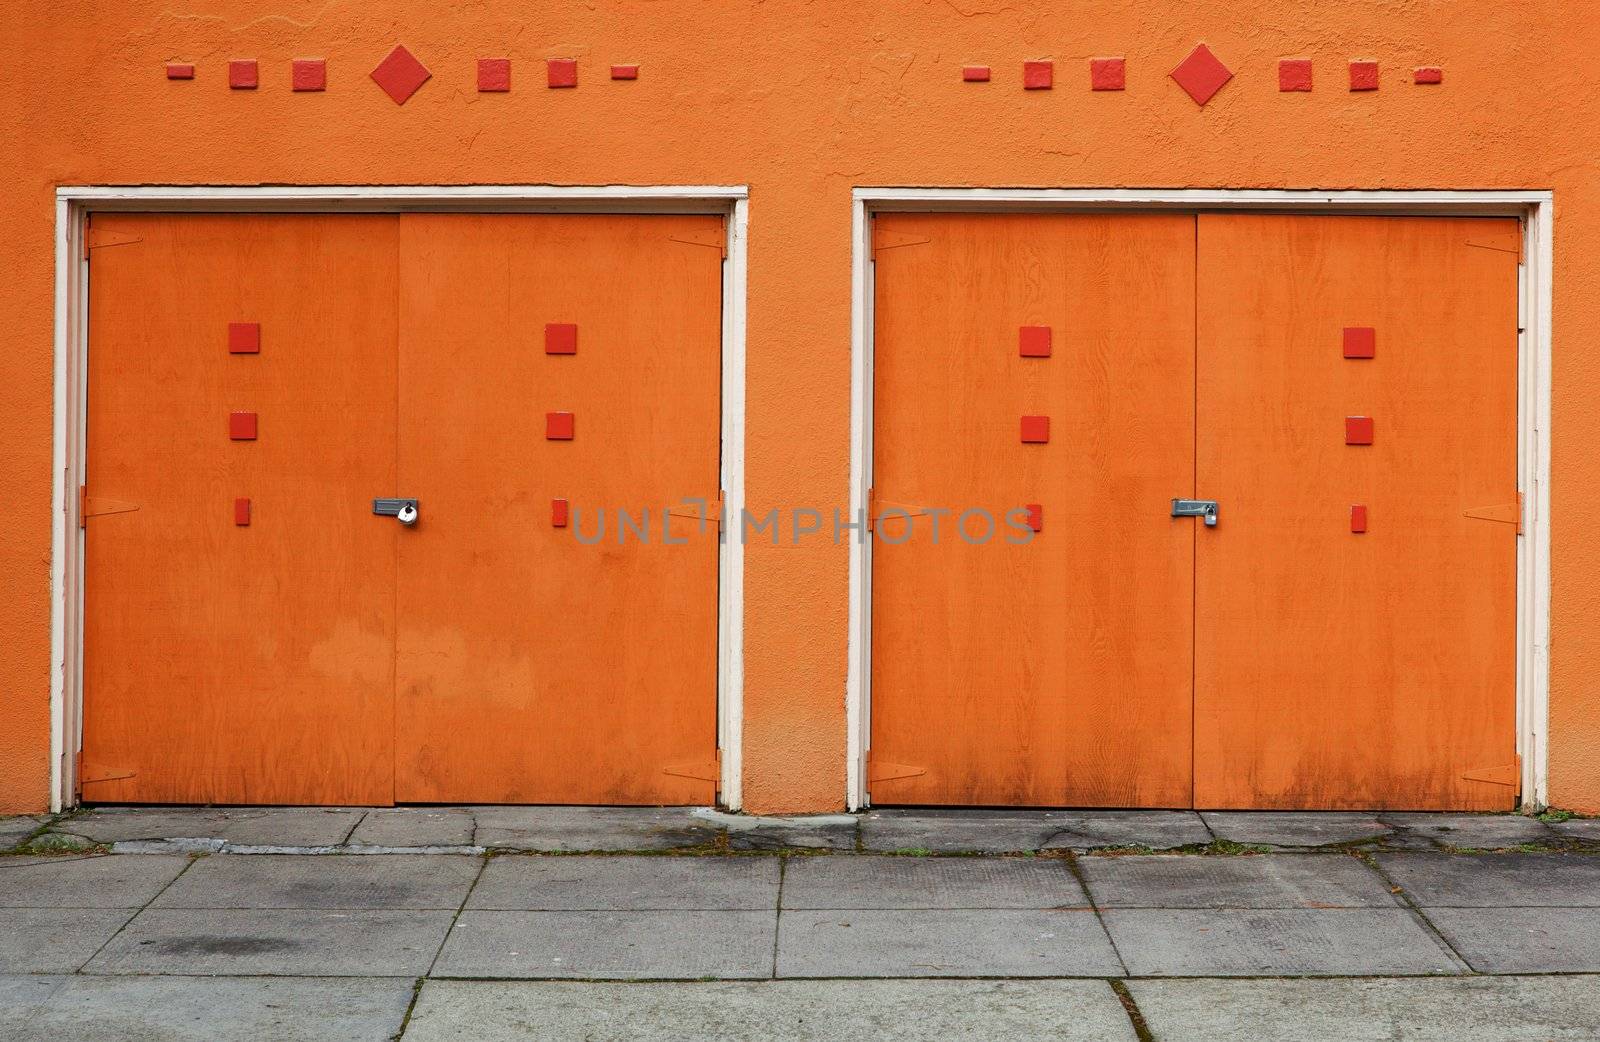 Two Orange Garage Doors by bobkeenan